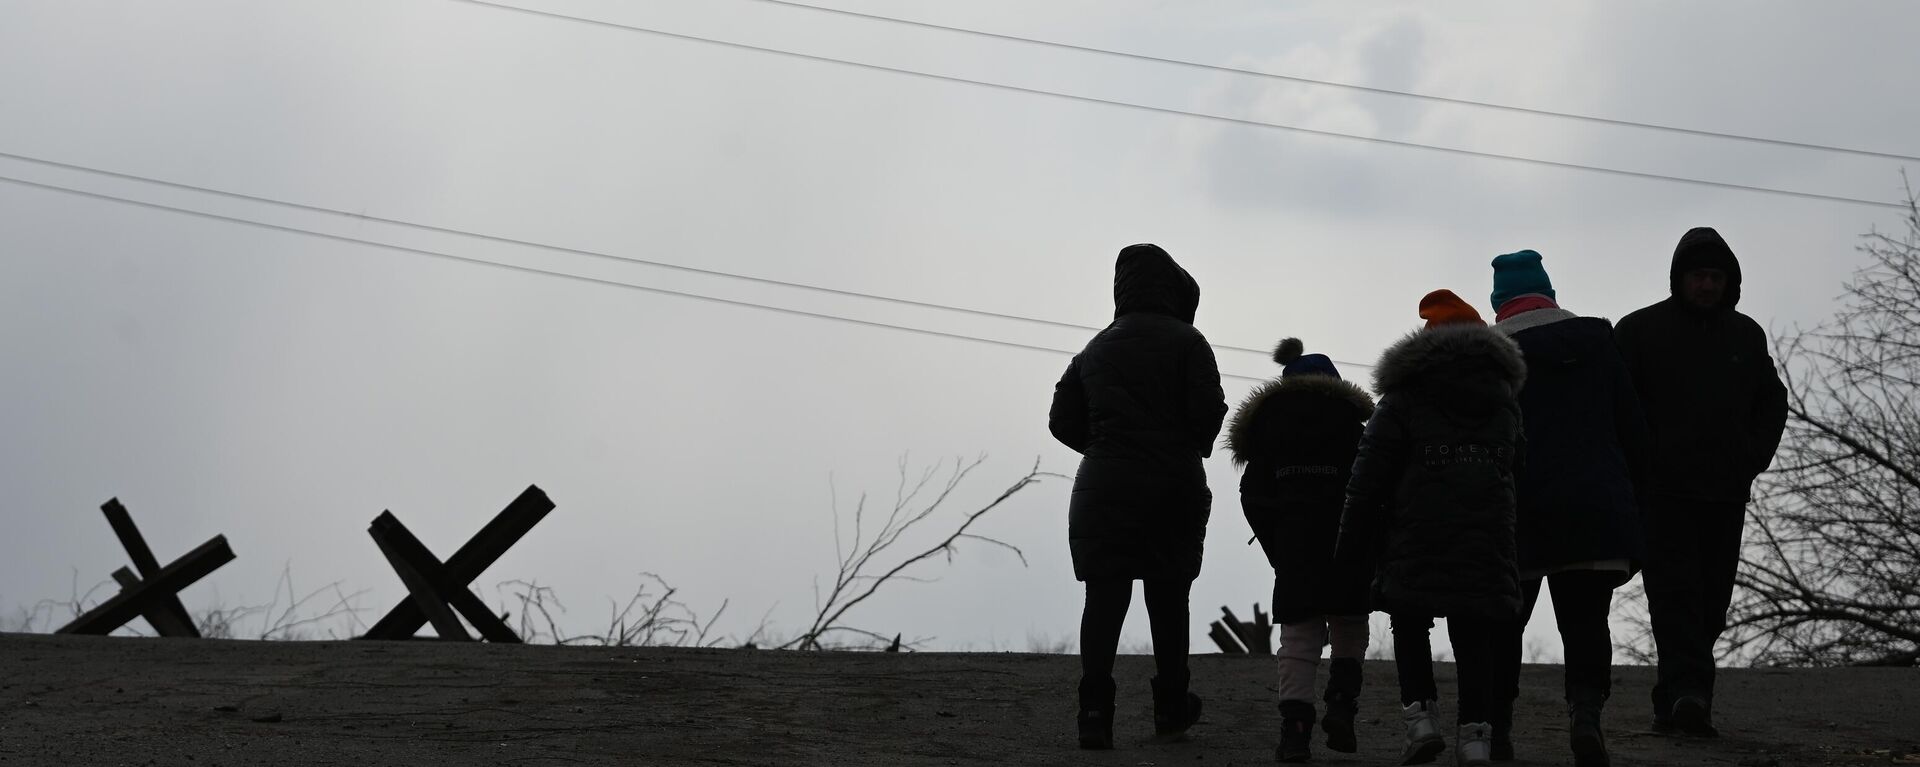 Беженцы на выезде из Мариуполя, 17 марта 2022 года  - Sputnik Latvija, 1920, 30.03.2022